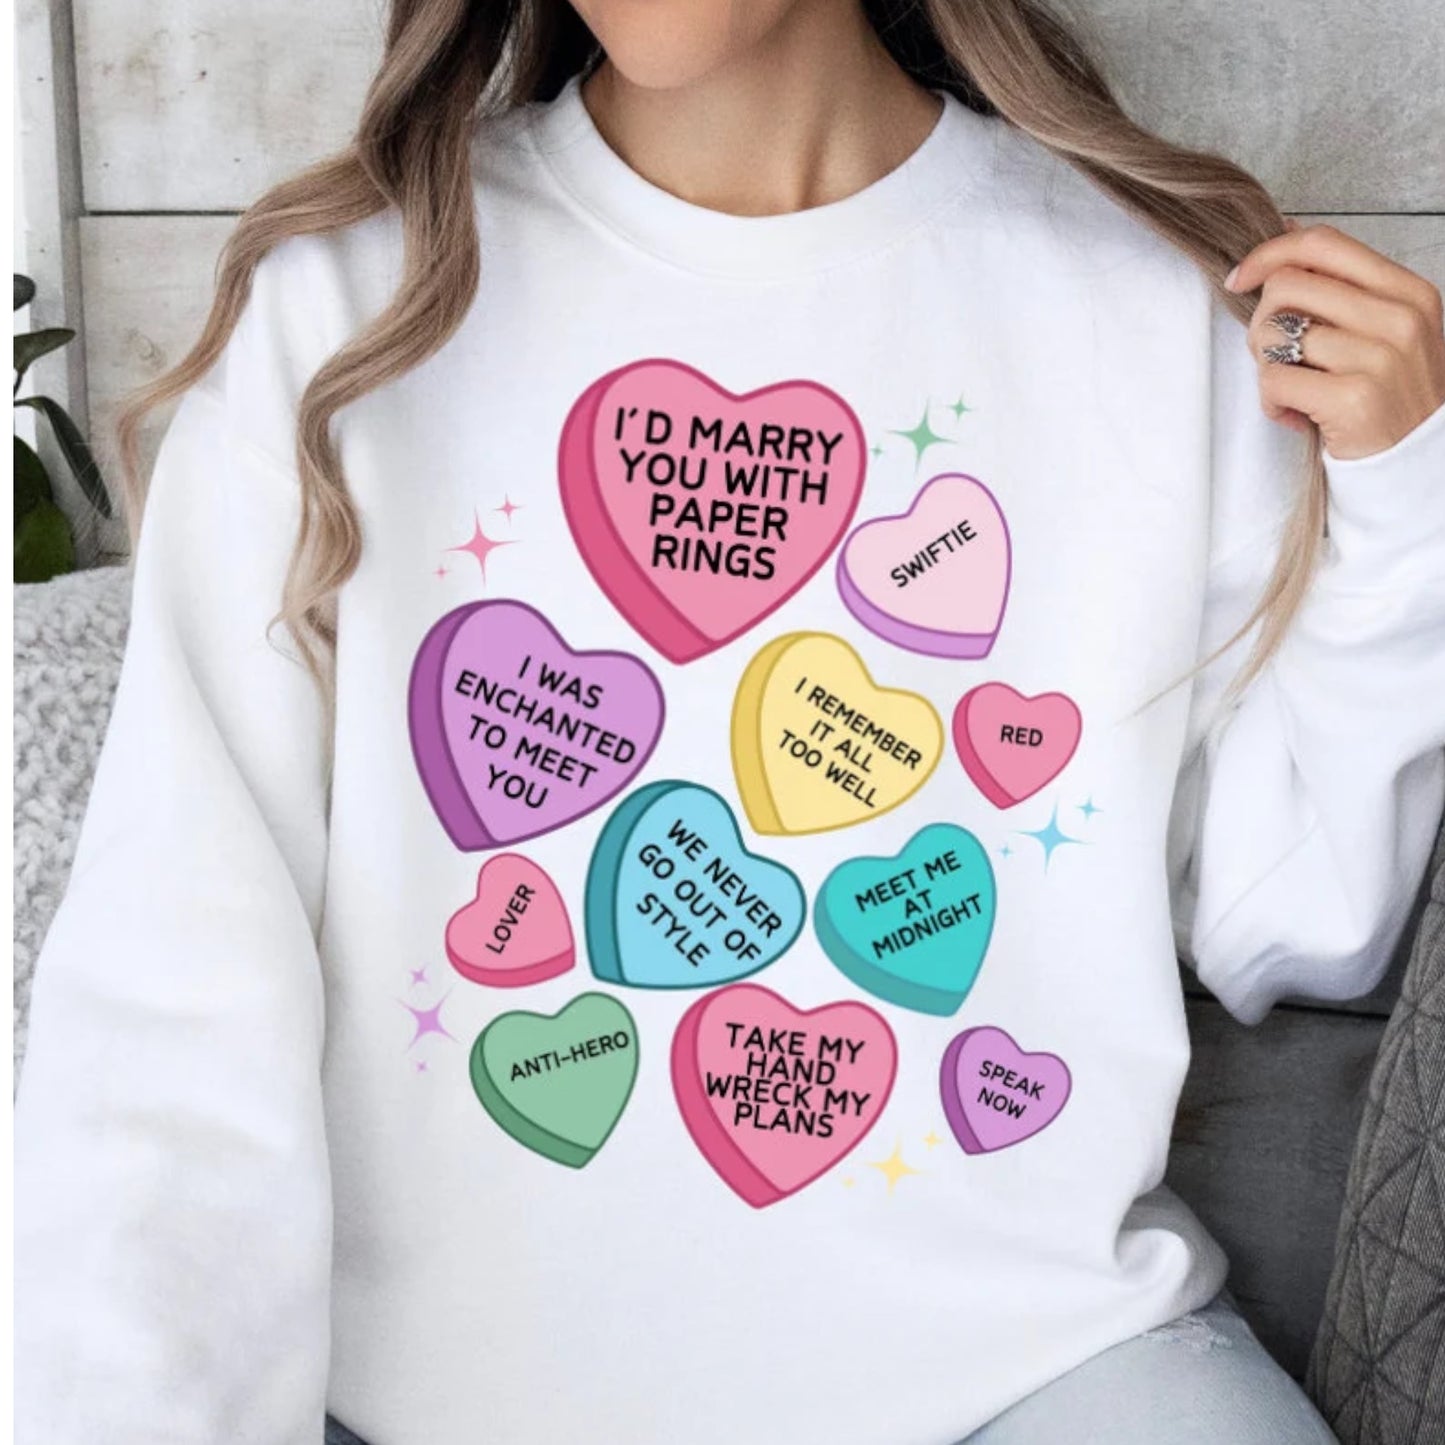 Swiftie Candy Hearts-Crewneck Sweatshirt or Tee